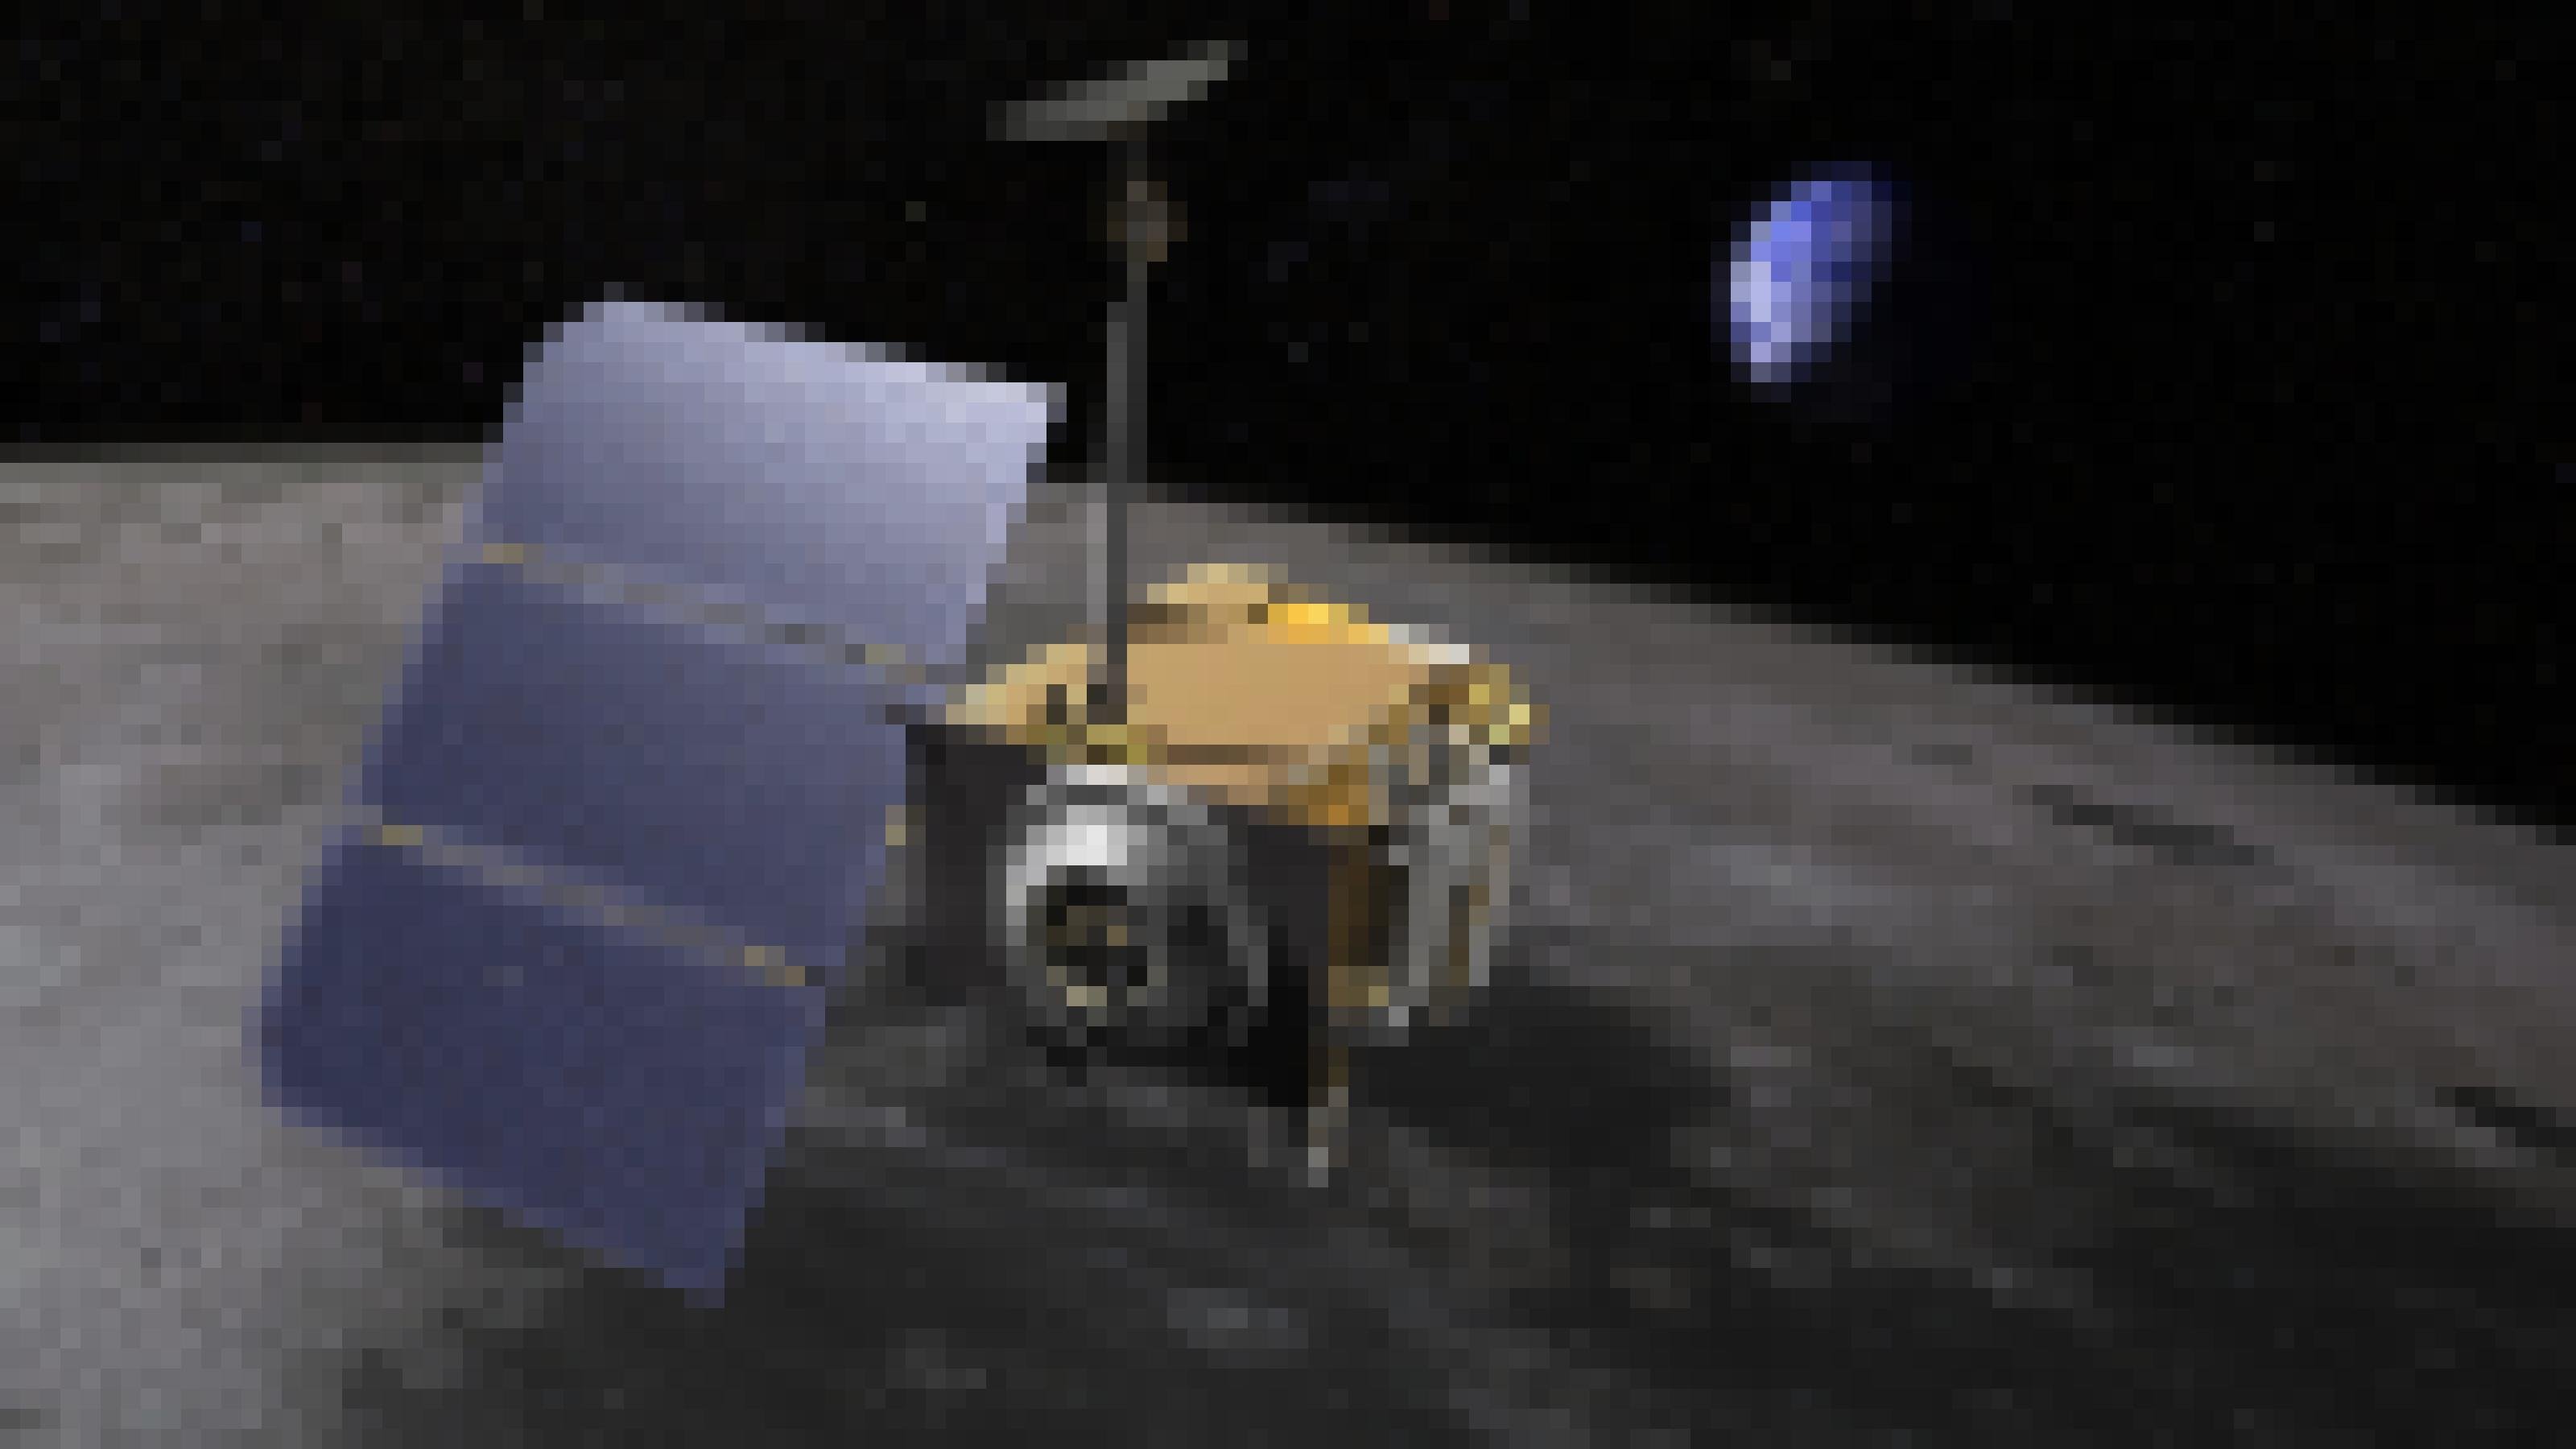 Eine künstlerische Darstelllung der Mondraumsonde Lunar Reconnaissance Orbiter (LRO), die sich im linken bis mittleren Bildvordergrund befindet. Die Raumsonde überfliegt den Mond und im Hintergrund kann man die Erde erkennen.